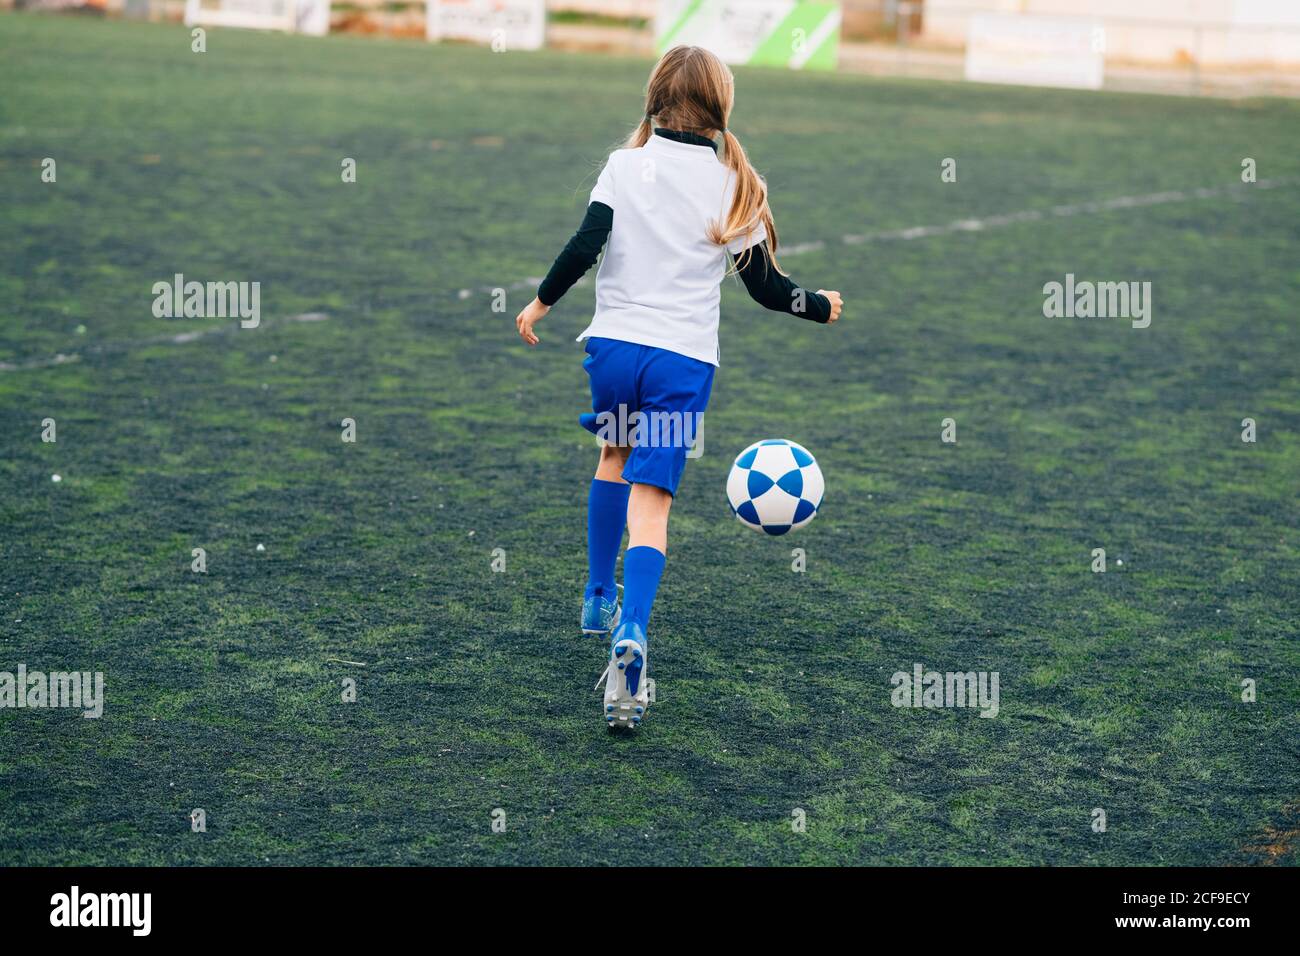 Vista posterior adolescente en blanco y azul uniforme y. tacos para correr  y prepararse para patear el balón mientras se juega al fútbol solo en el  campo verde en el club deportivo